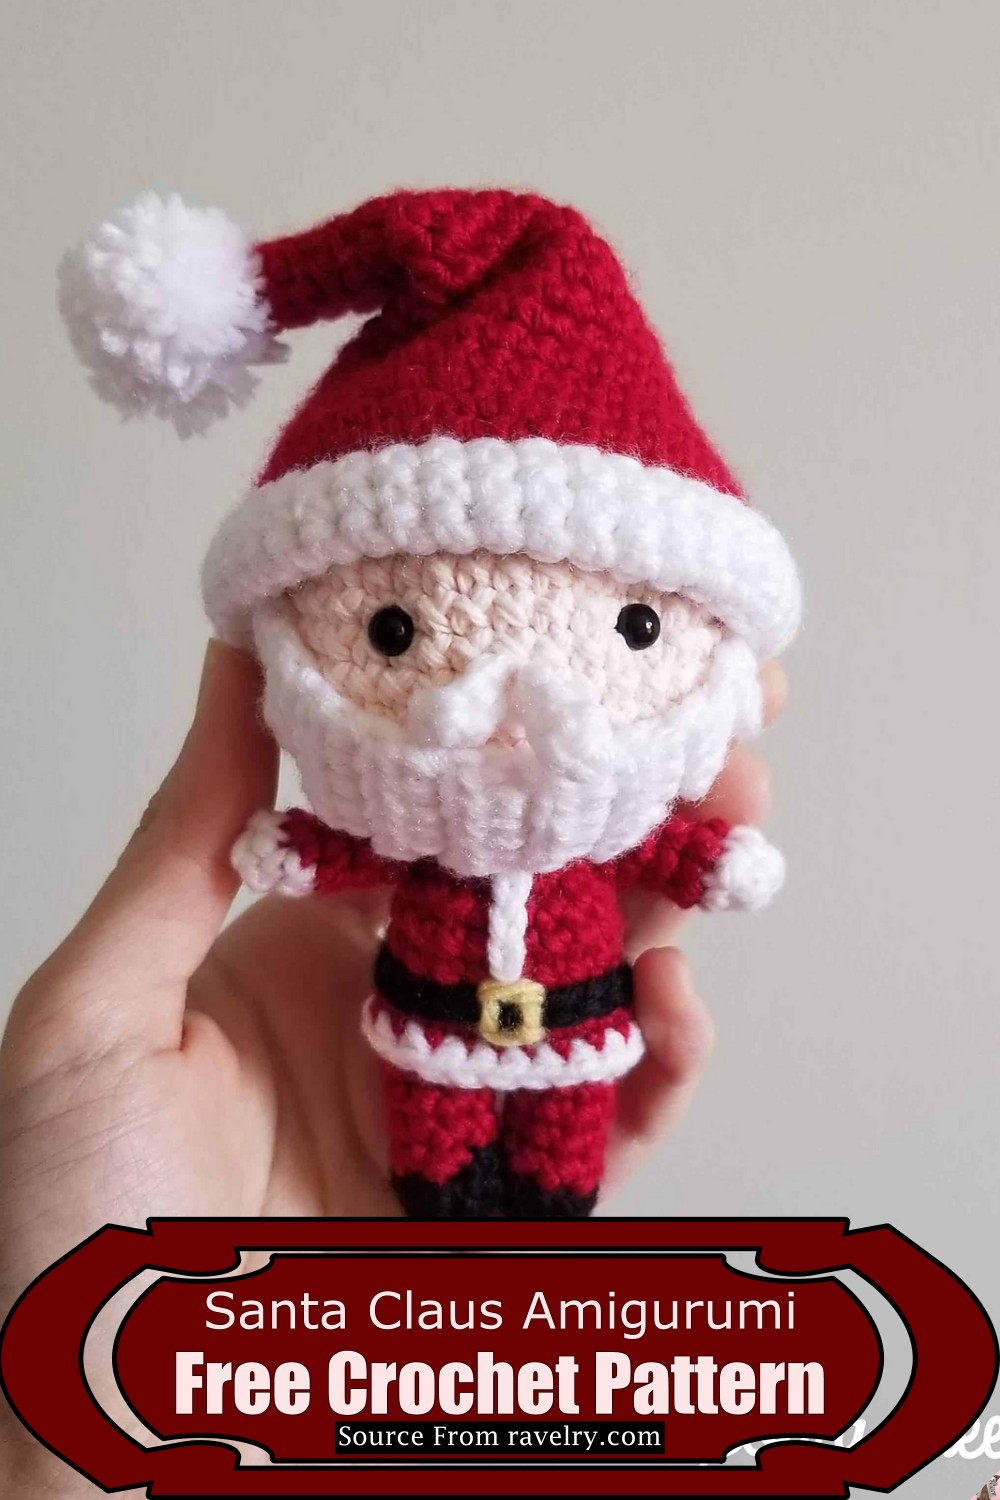 Crochet Santa Claus Amigurumi